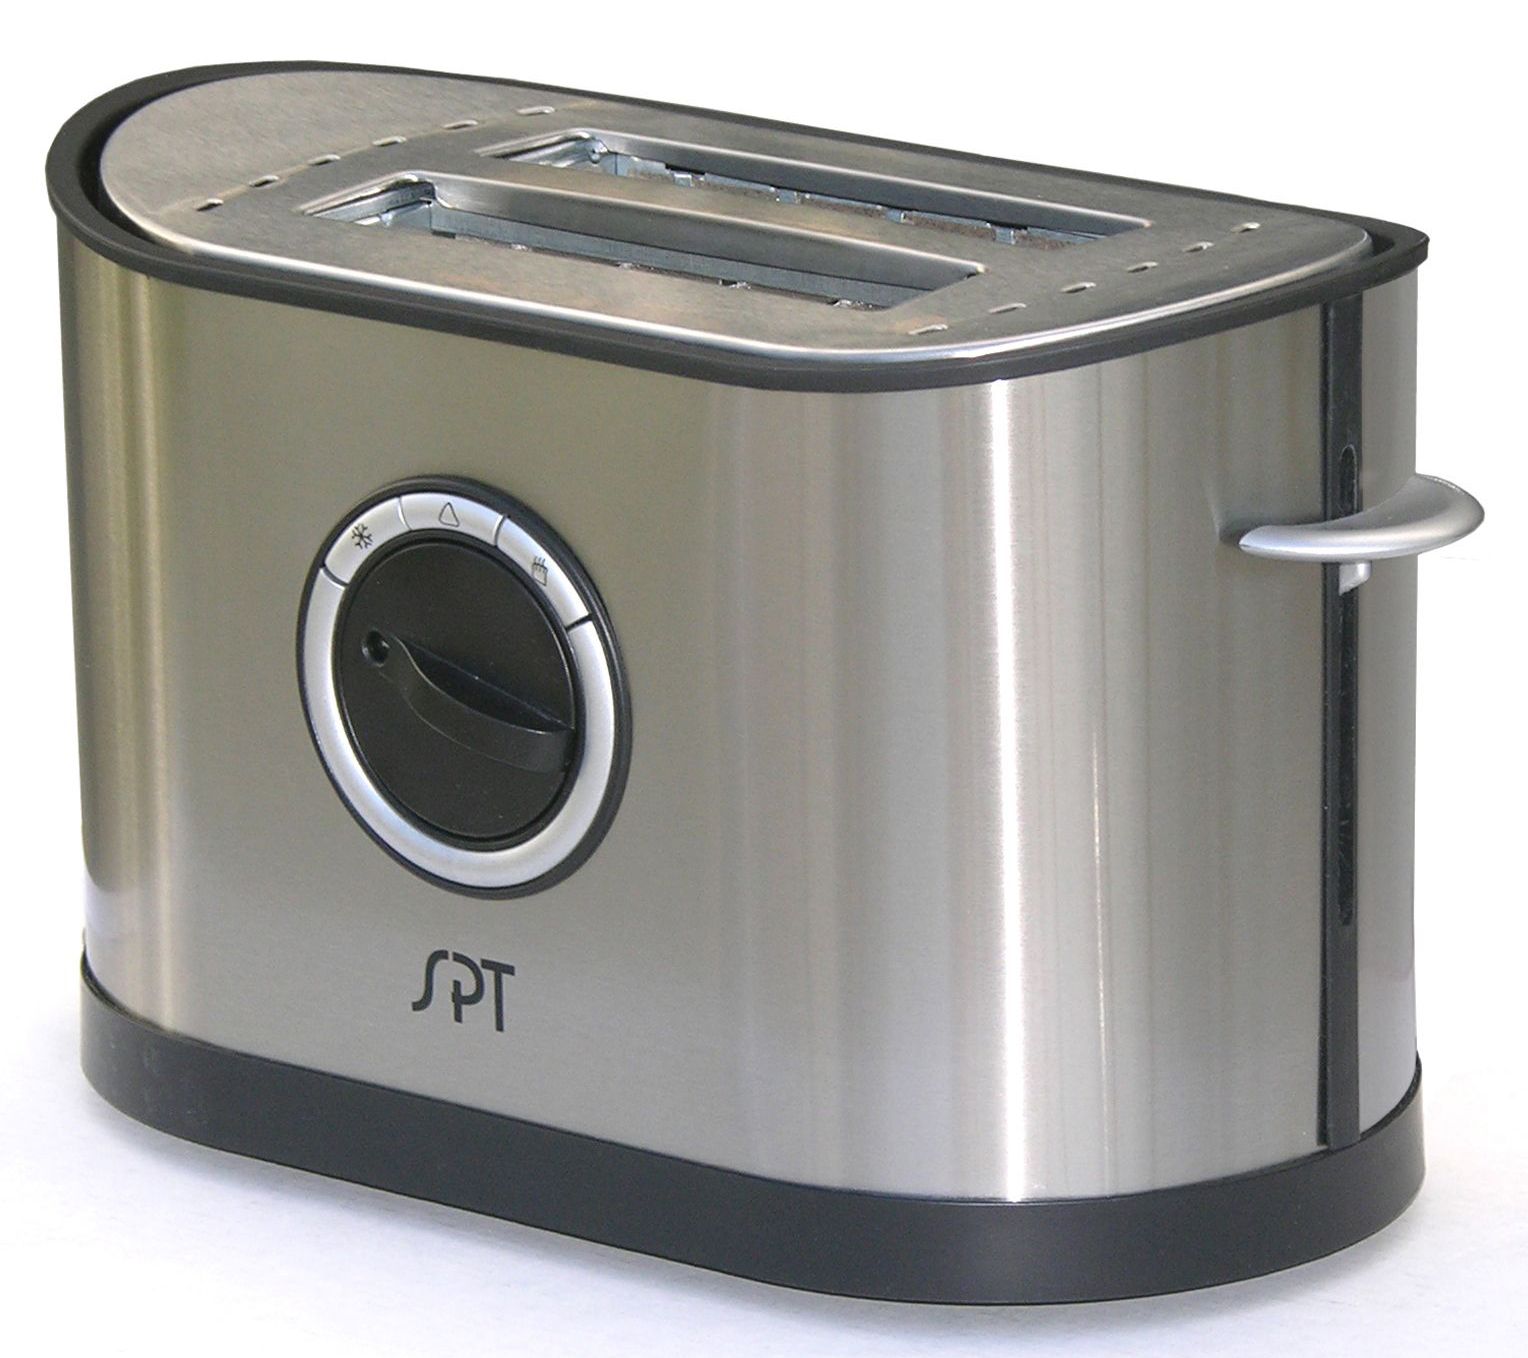 Krups My Memory Digital Stainless Steel Toaster 